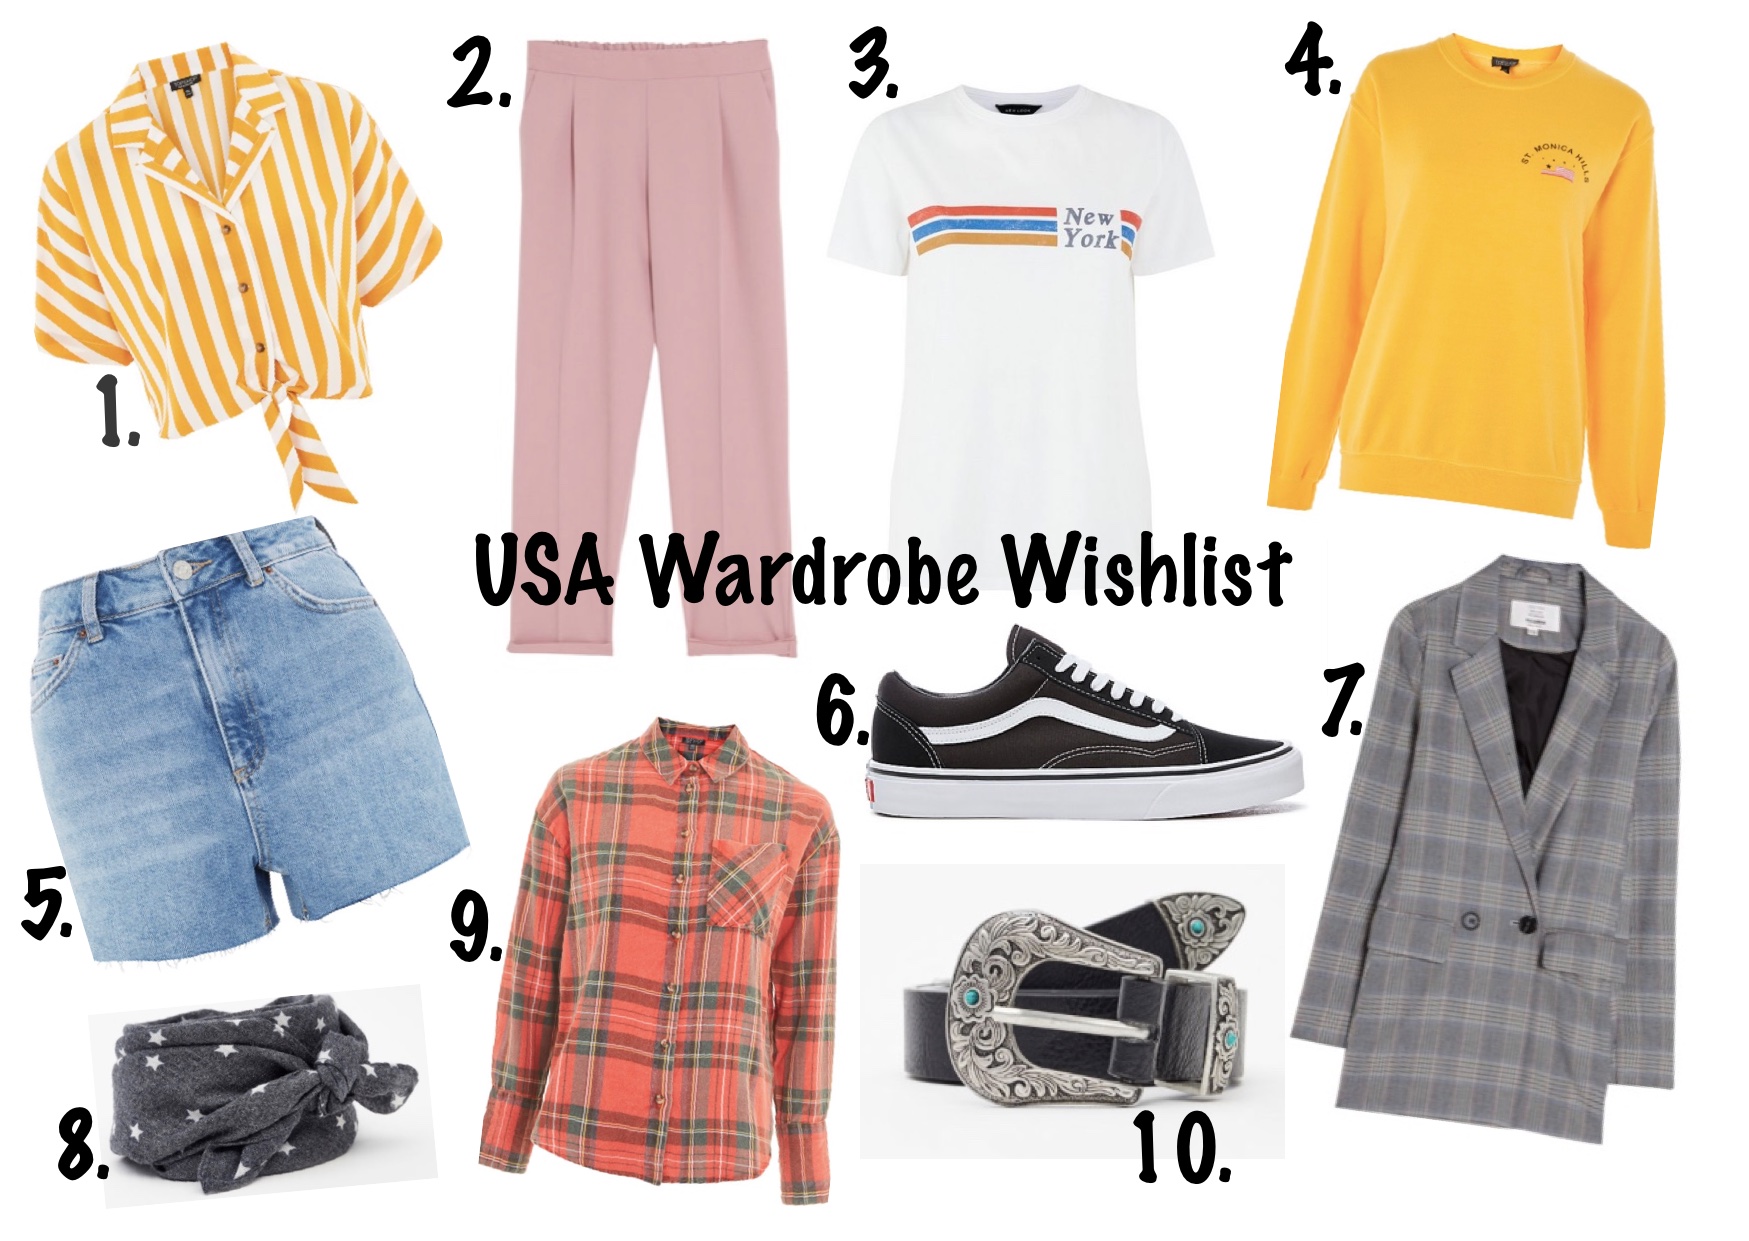 America wardrobe wishlist